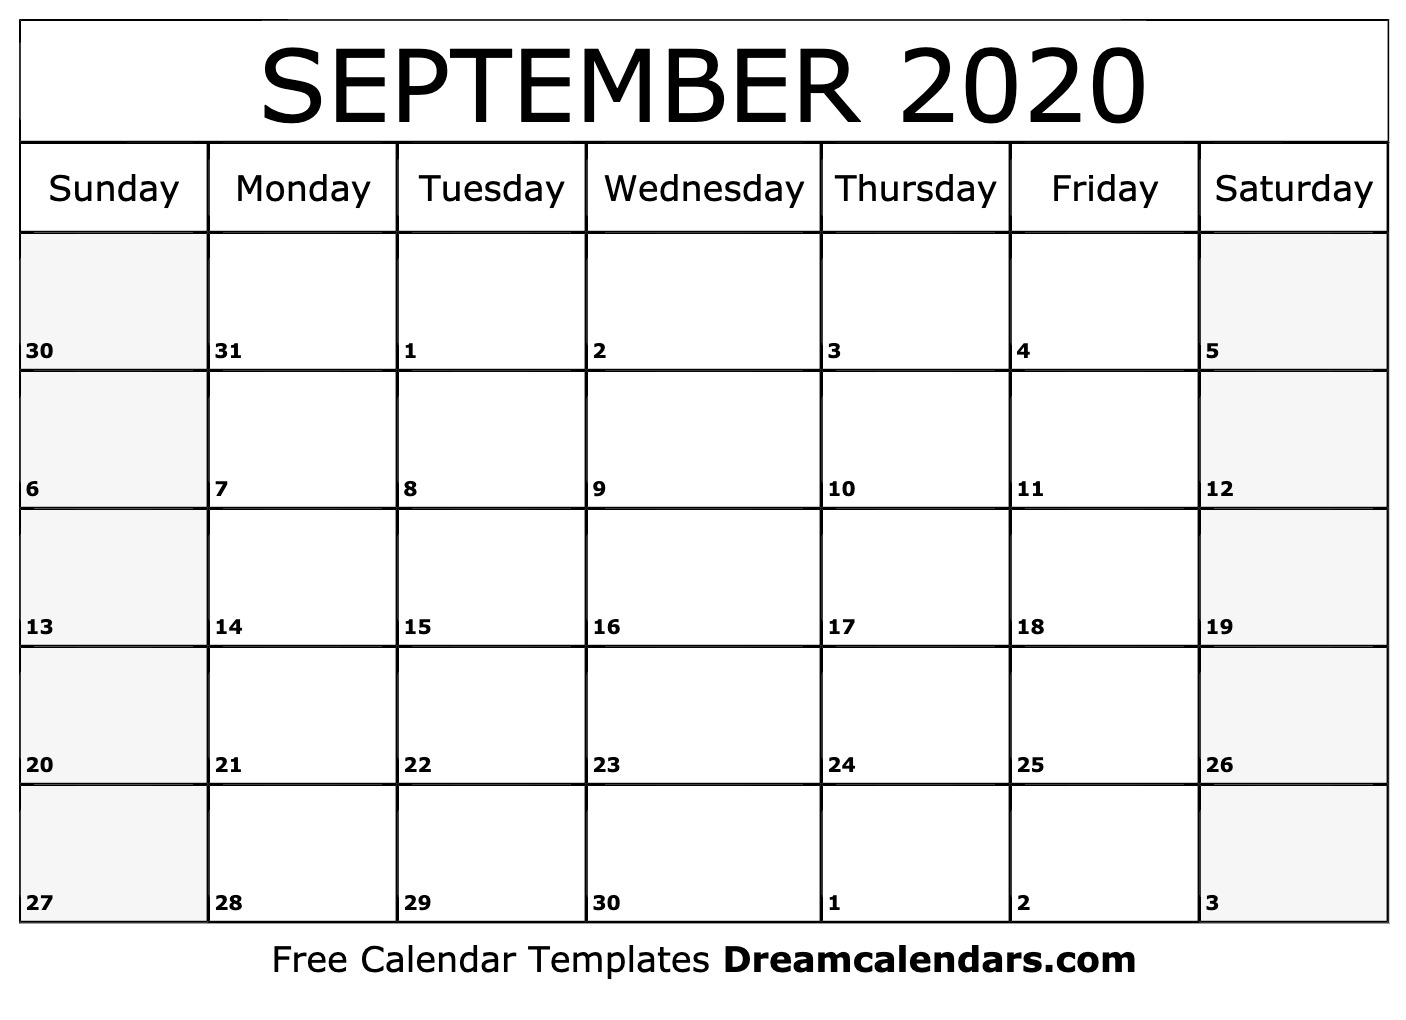 Free September 2020 Printable Calendar Dream Calendars